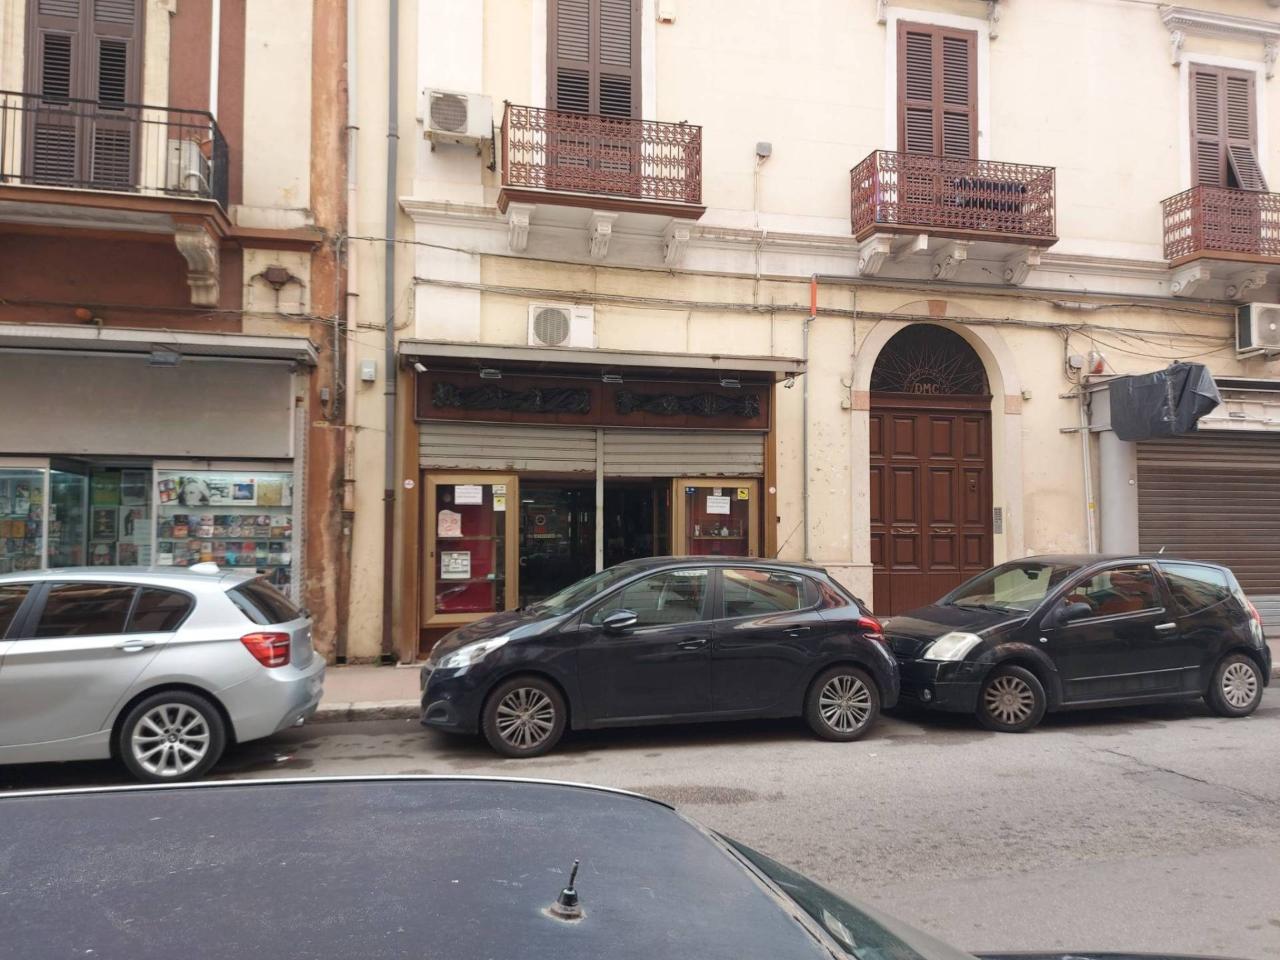 Negozio in vendita a Taranto